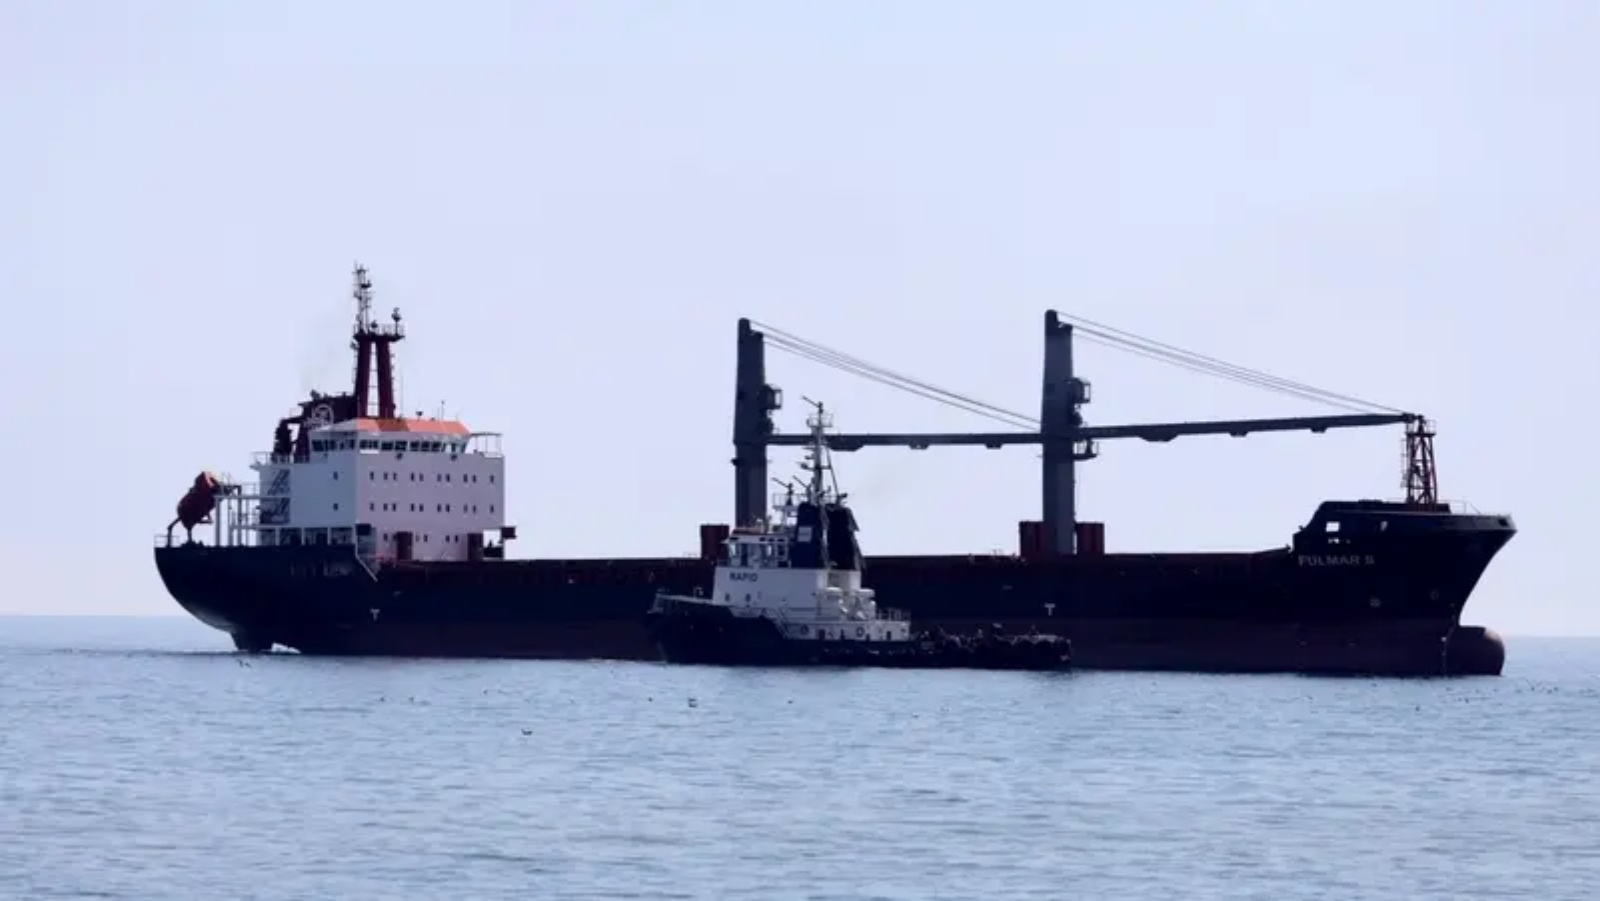 ناقلة البضائع Fulmar S تبحر باتجاه ميناء تشورنومورسك على البحر الأسود